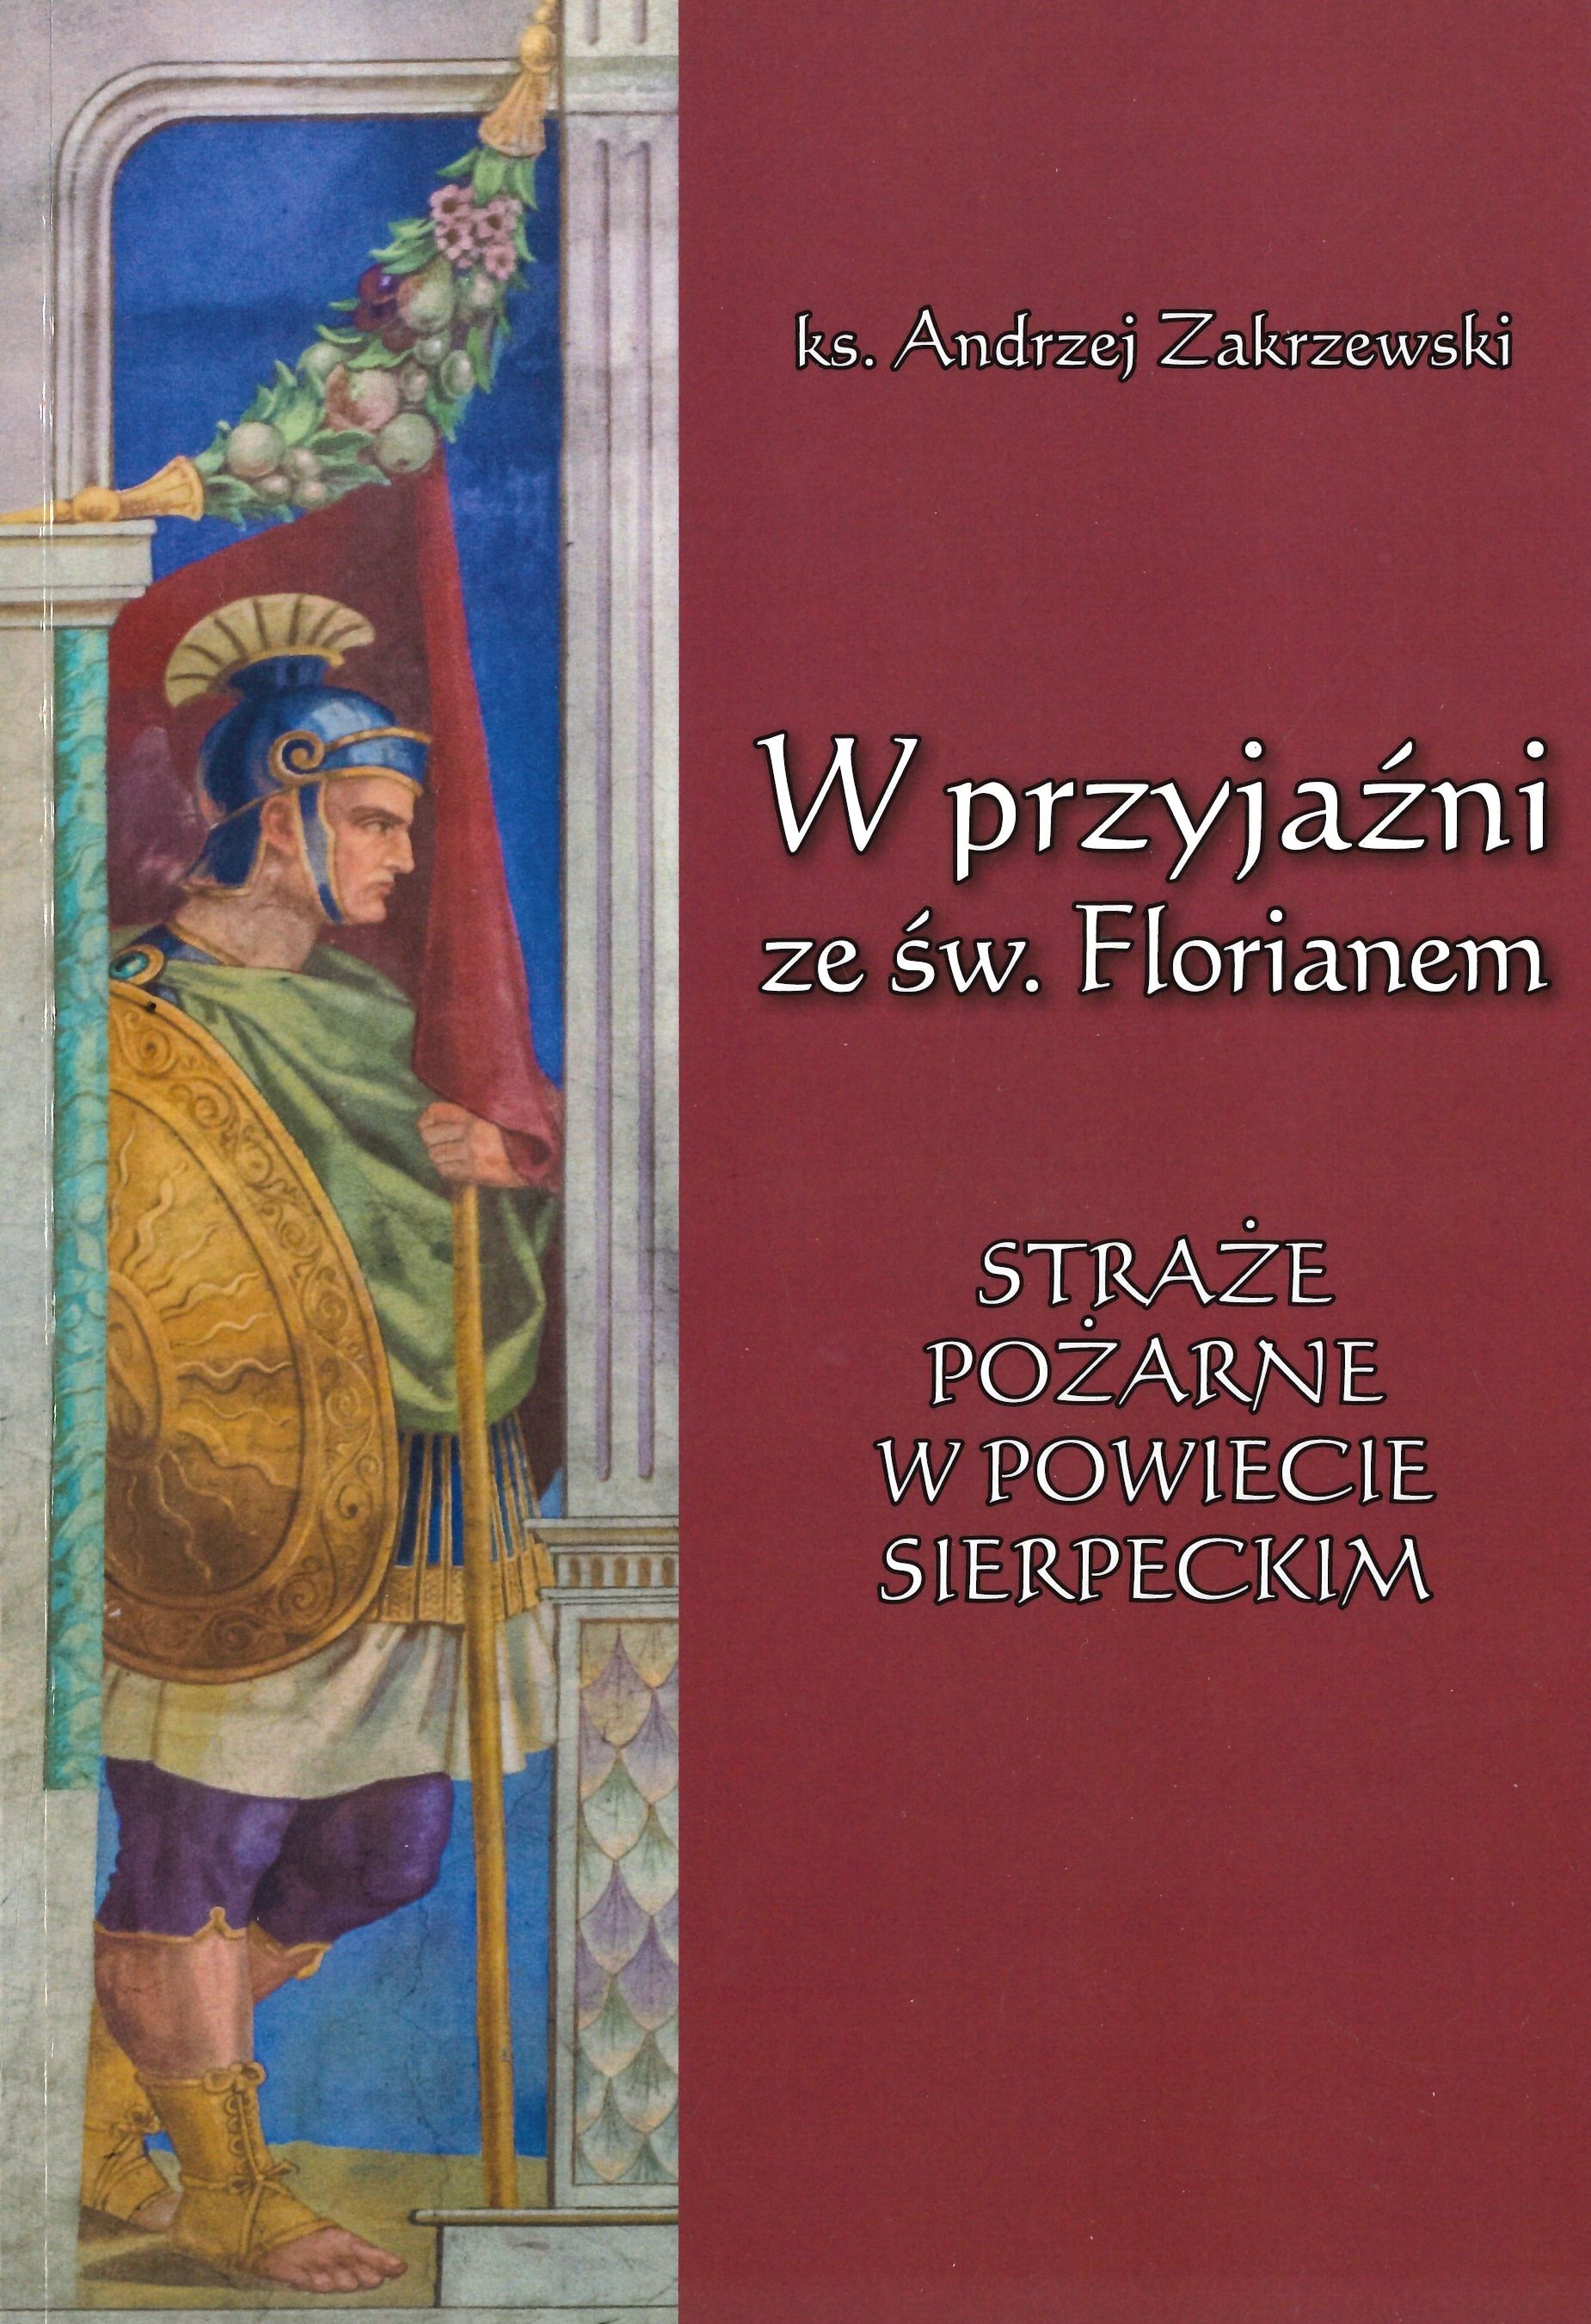 Andrzej Zakrzewski: W przyjani ze w. Florianem: strae poarne w powiecie sierpeckim, Pocki Instytut Wydawniczy, Pock 2018, [84 s.]; il.